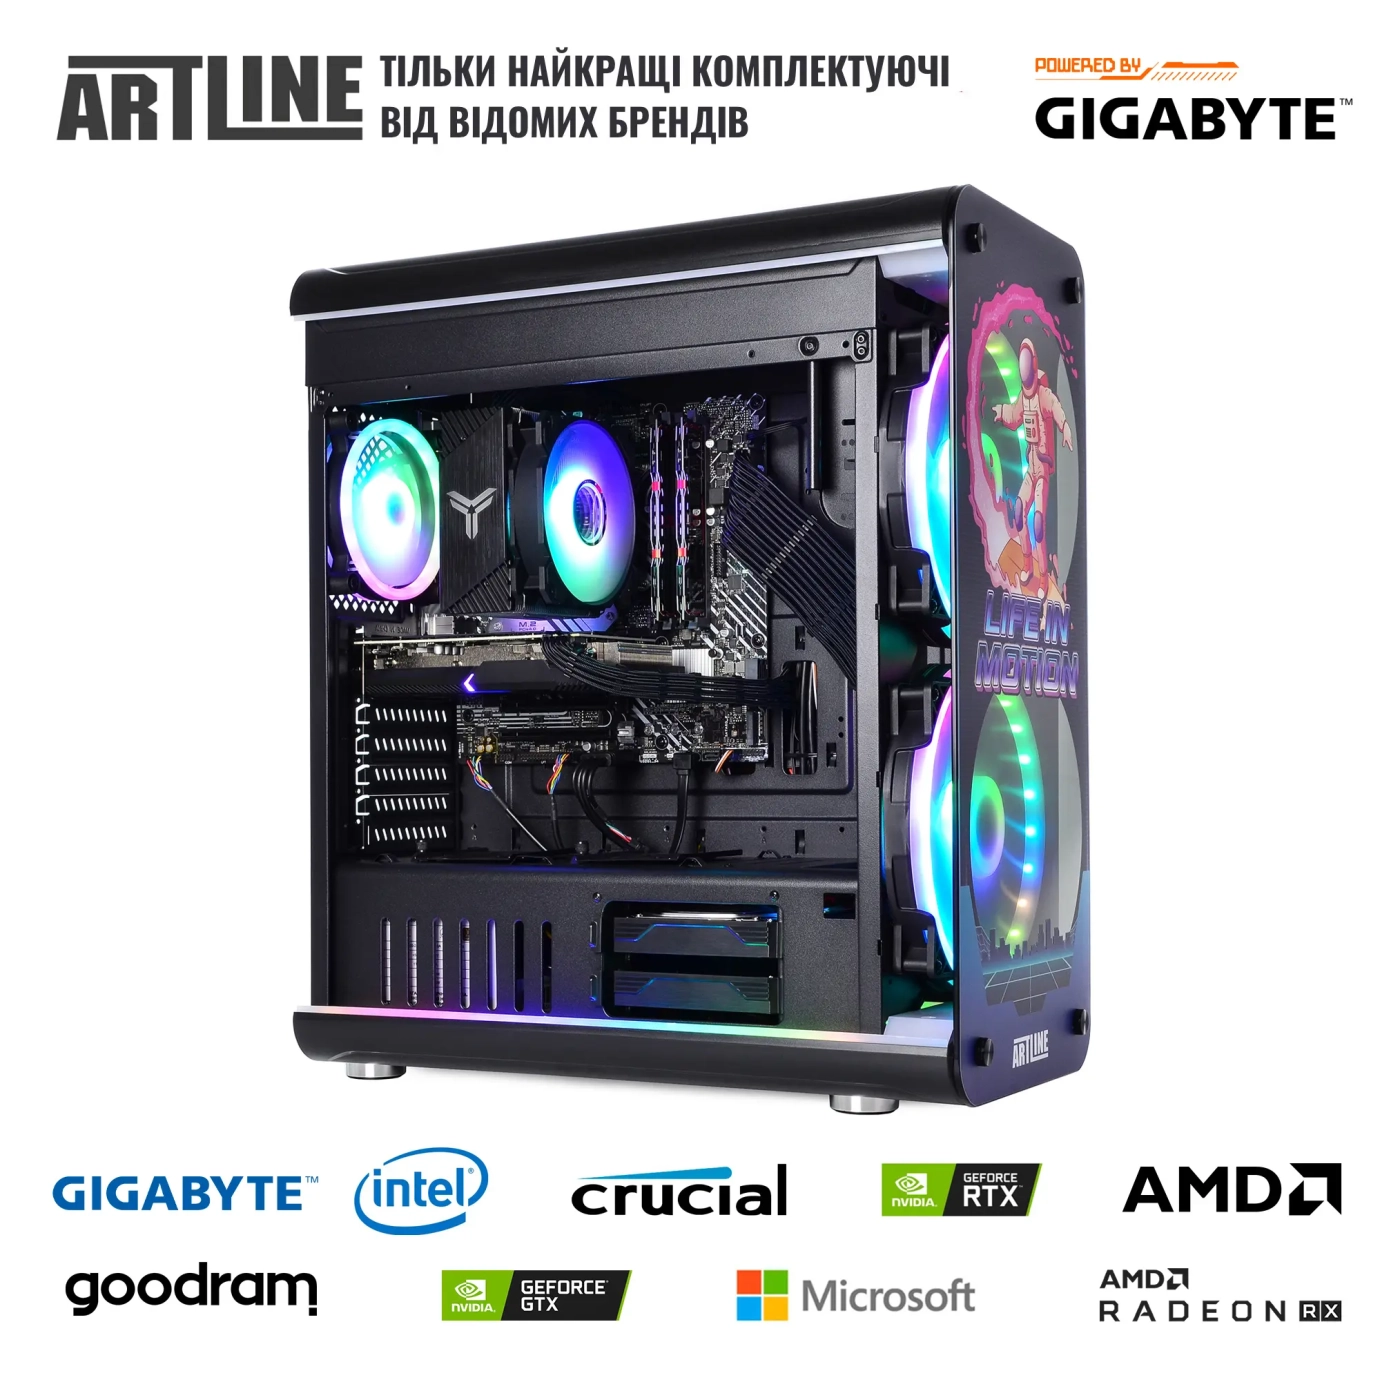 Купить Компьютер ARTLINE Overlord NEONv80 Gigabyte Edition - фото 9